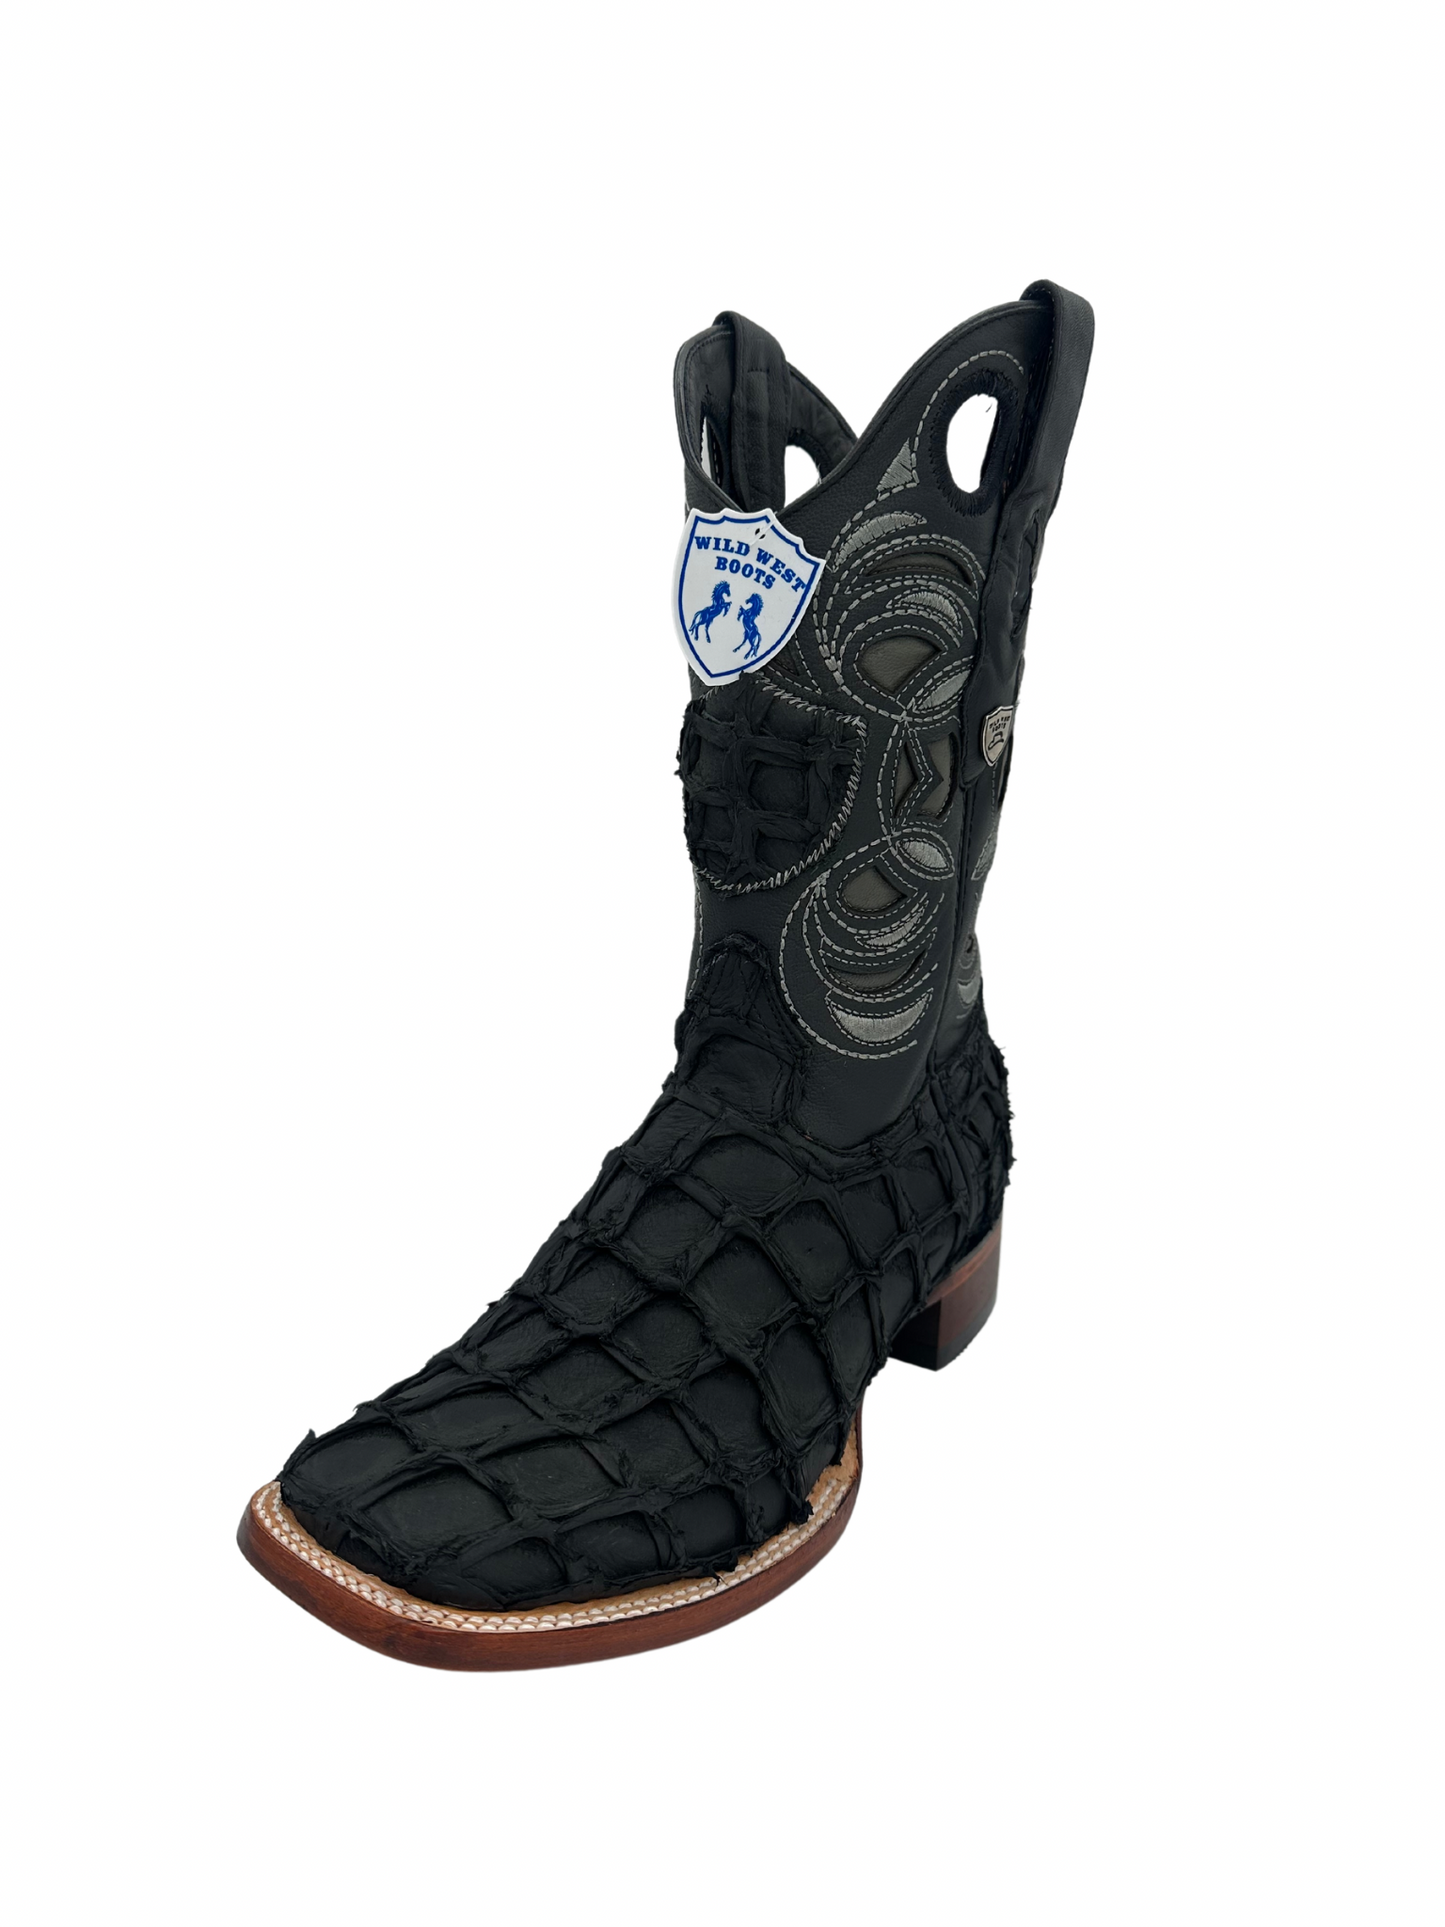 Wild West Men's Black Matte Genuine Pirarucu Wide Square Toe Boot